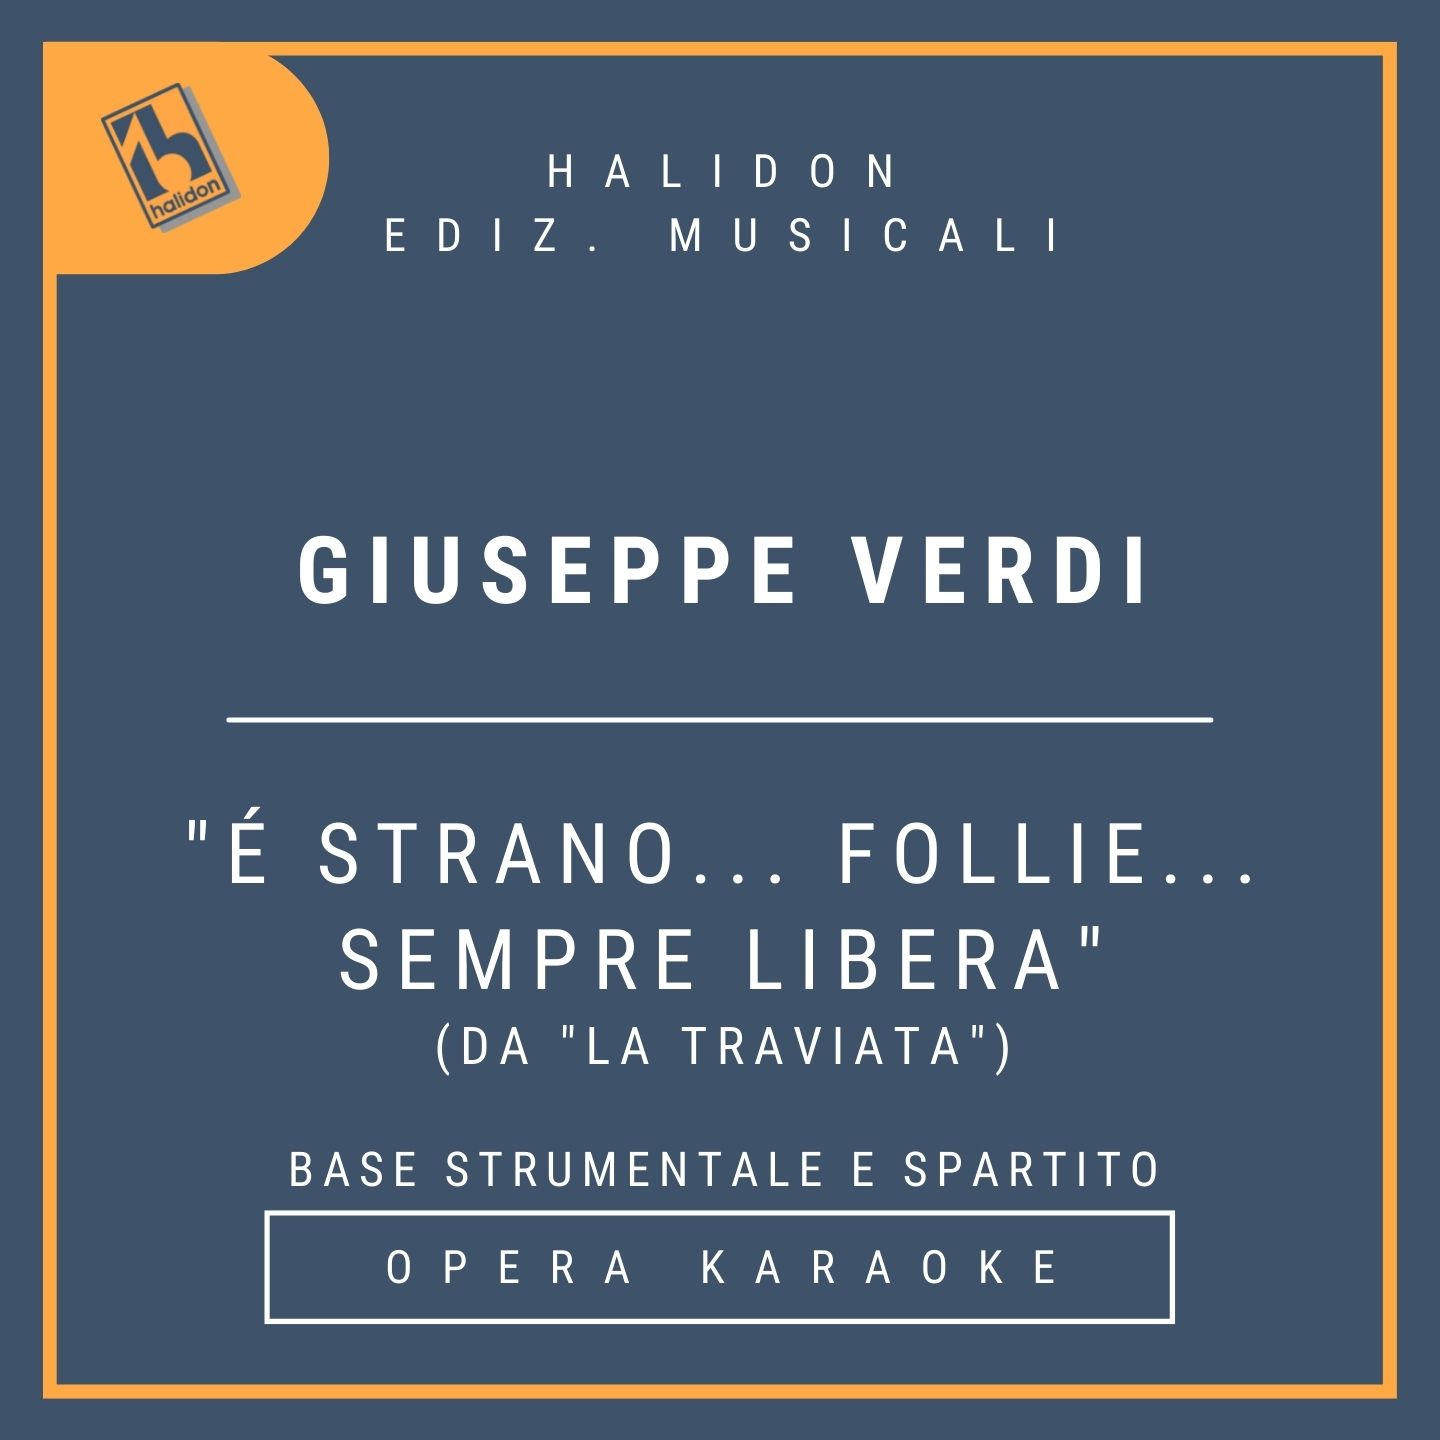 Giuseppe Verdi - E' strano... follie... sempre libera (da 'La Traviata) - Recitativo e aria di Violetta (soprano leggero) - Base strumentale + spartito